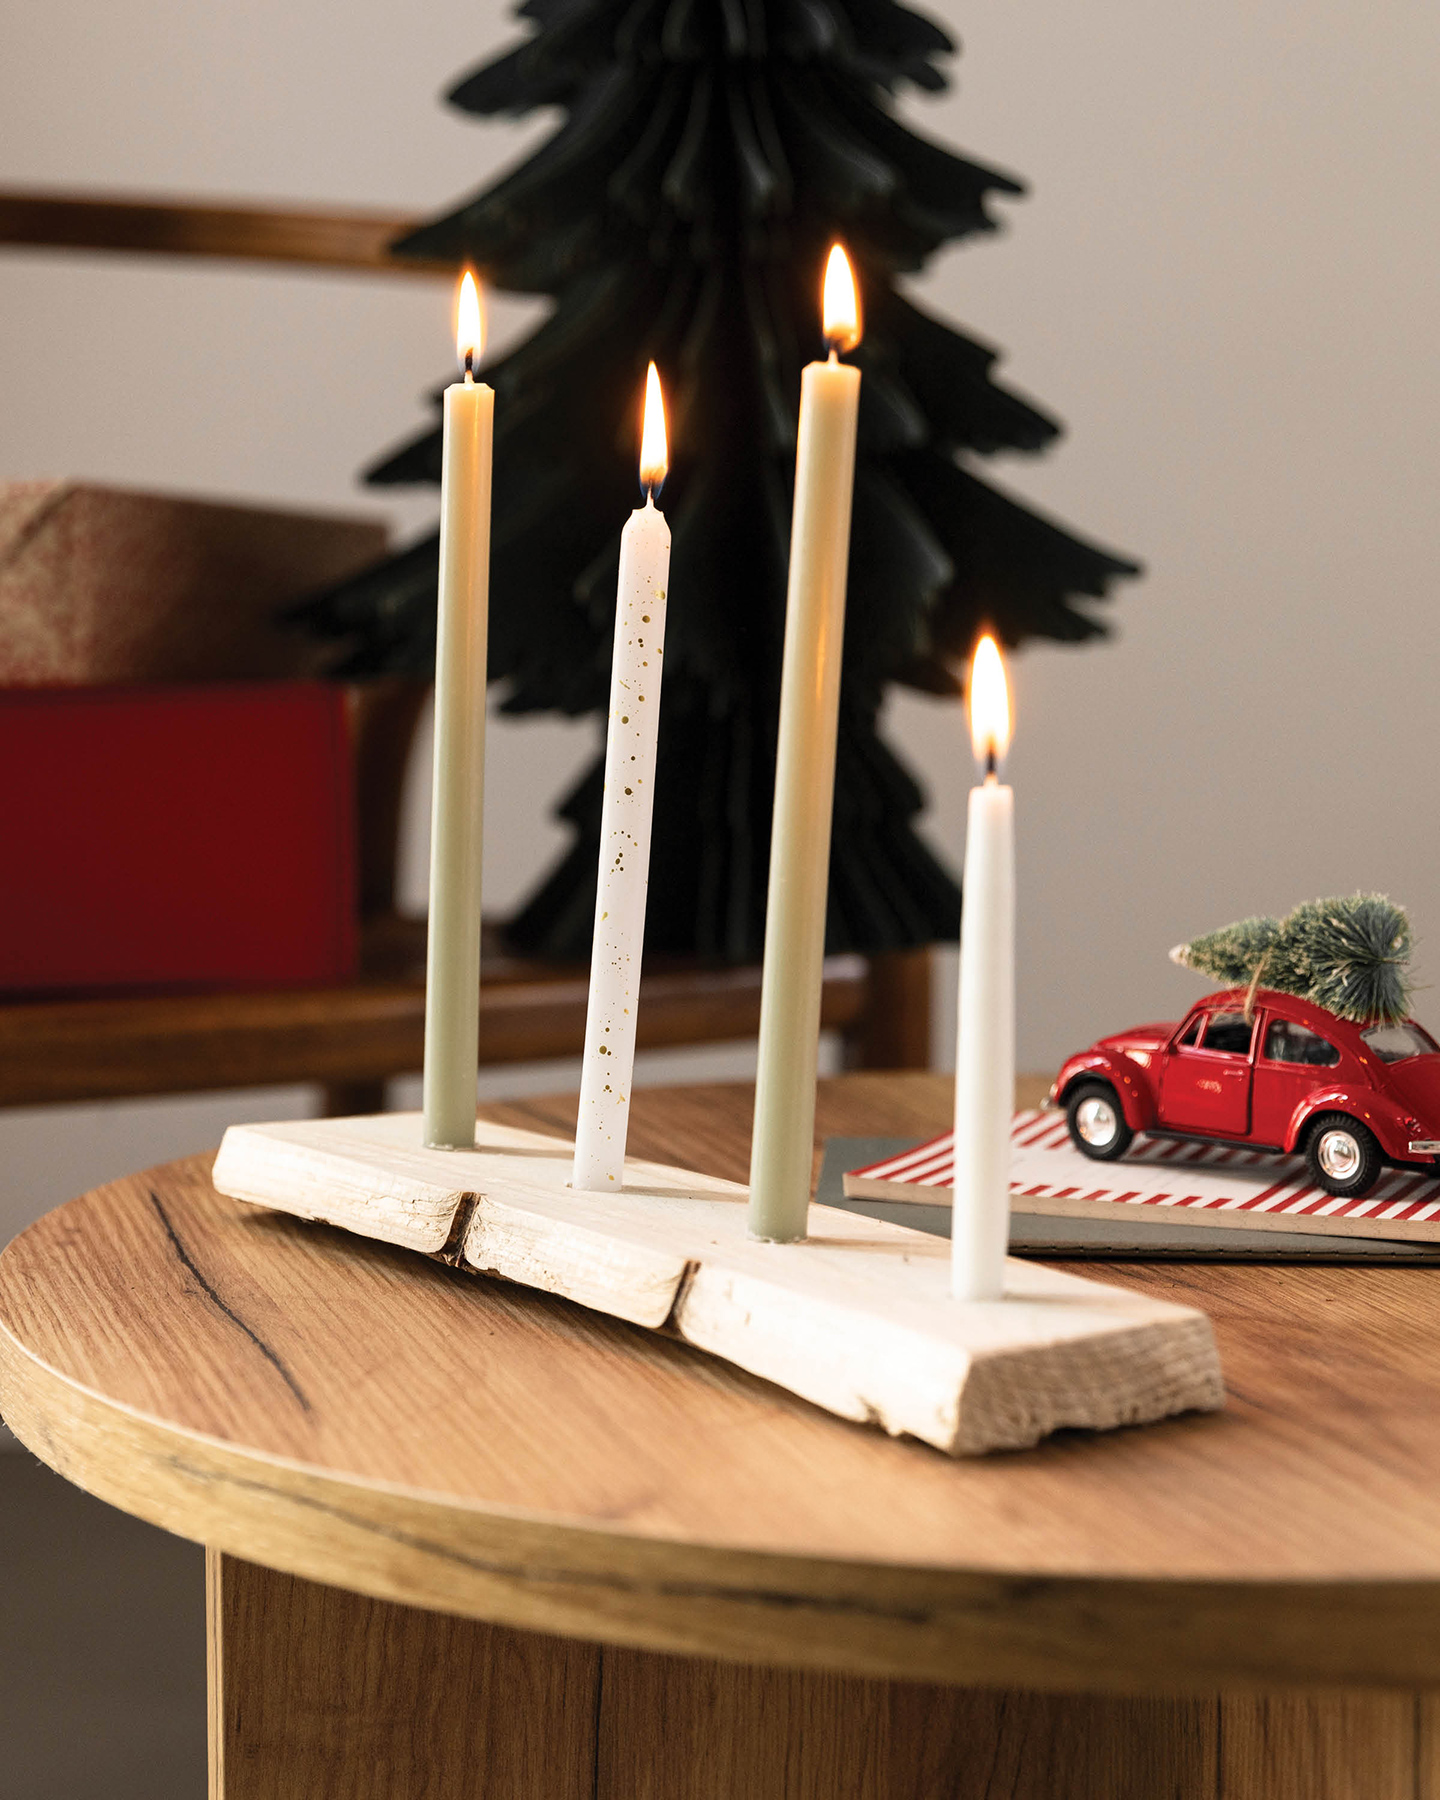 Candle Board als Adventskranz. Board bestückt mit vier Kerzen und weihnachtlich dekoriert.